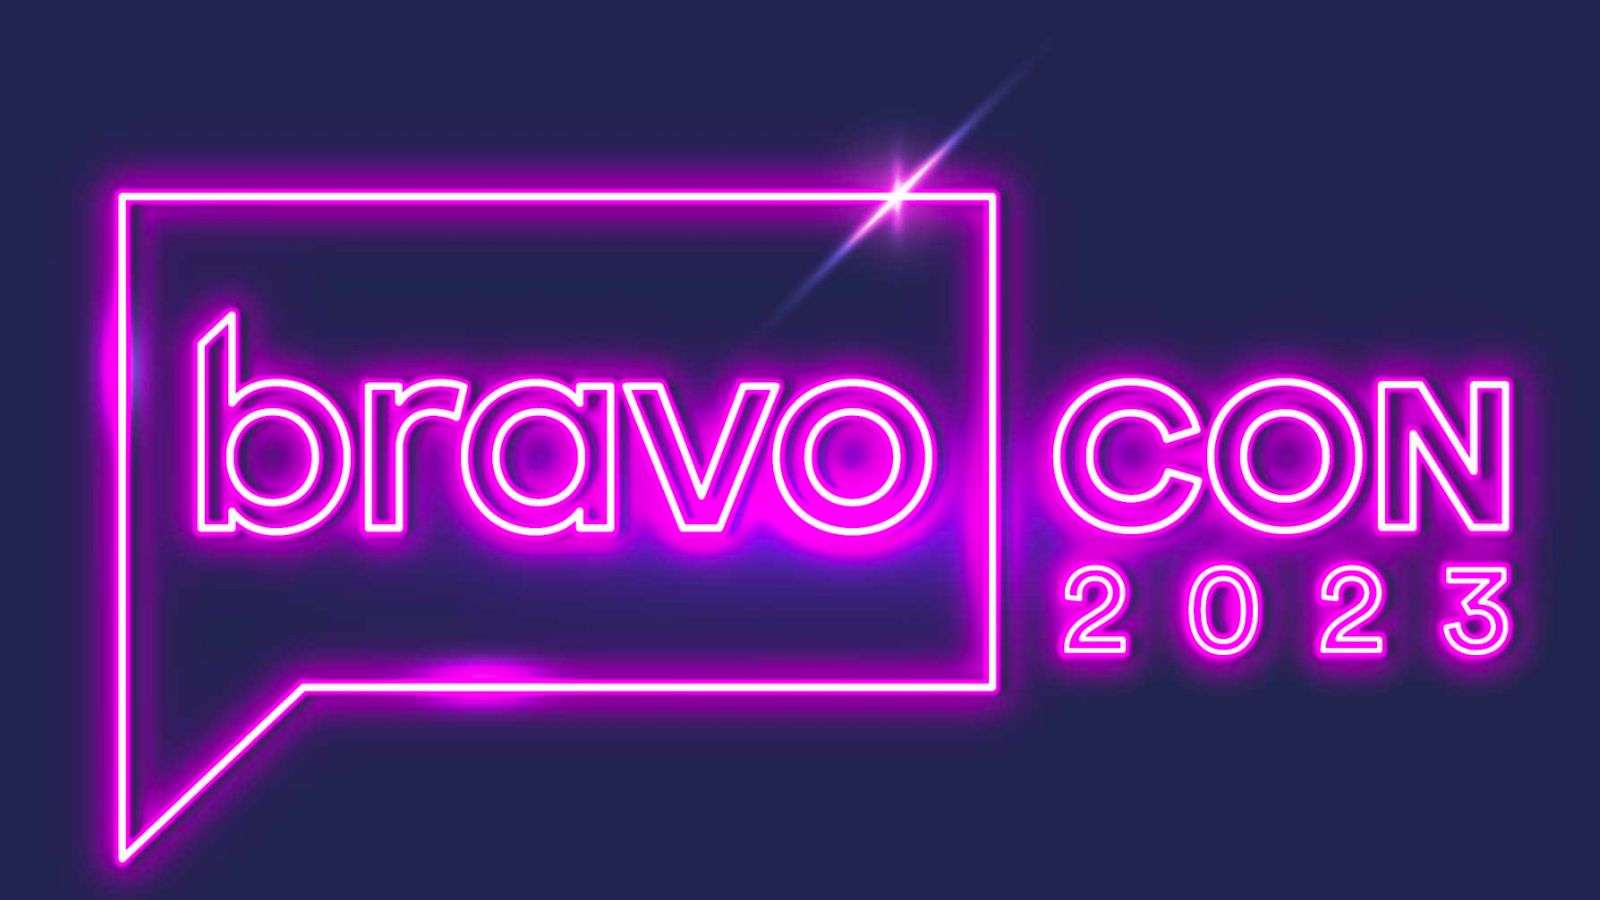 The logo of BravoCon 2023